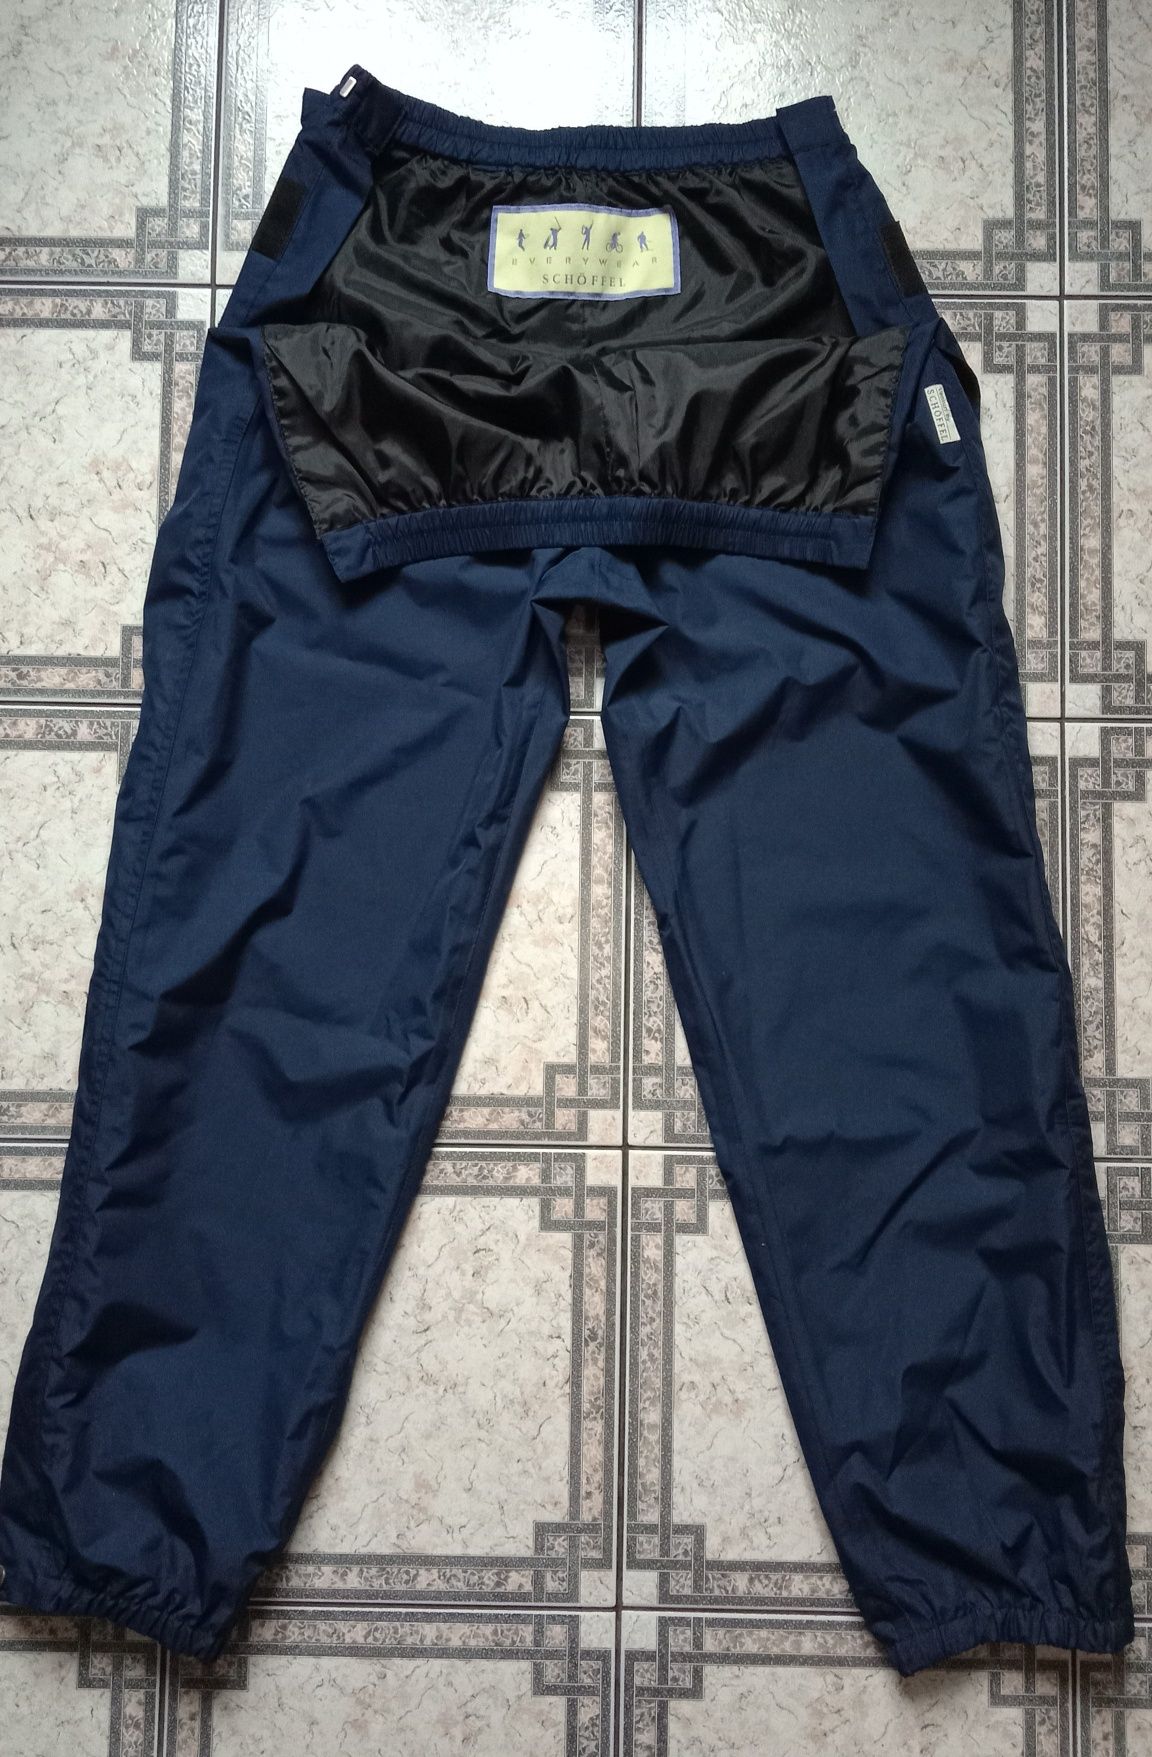 Schoffel Venturi spodnie sportowe przeciwdeszczowe trekkingowe M/L